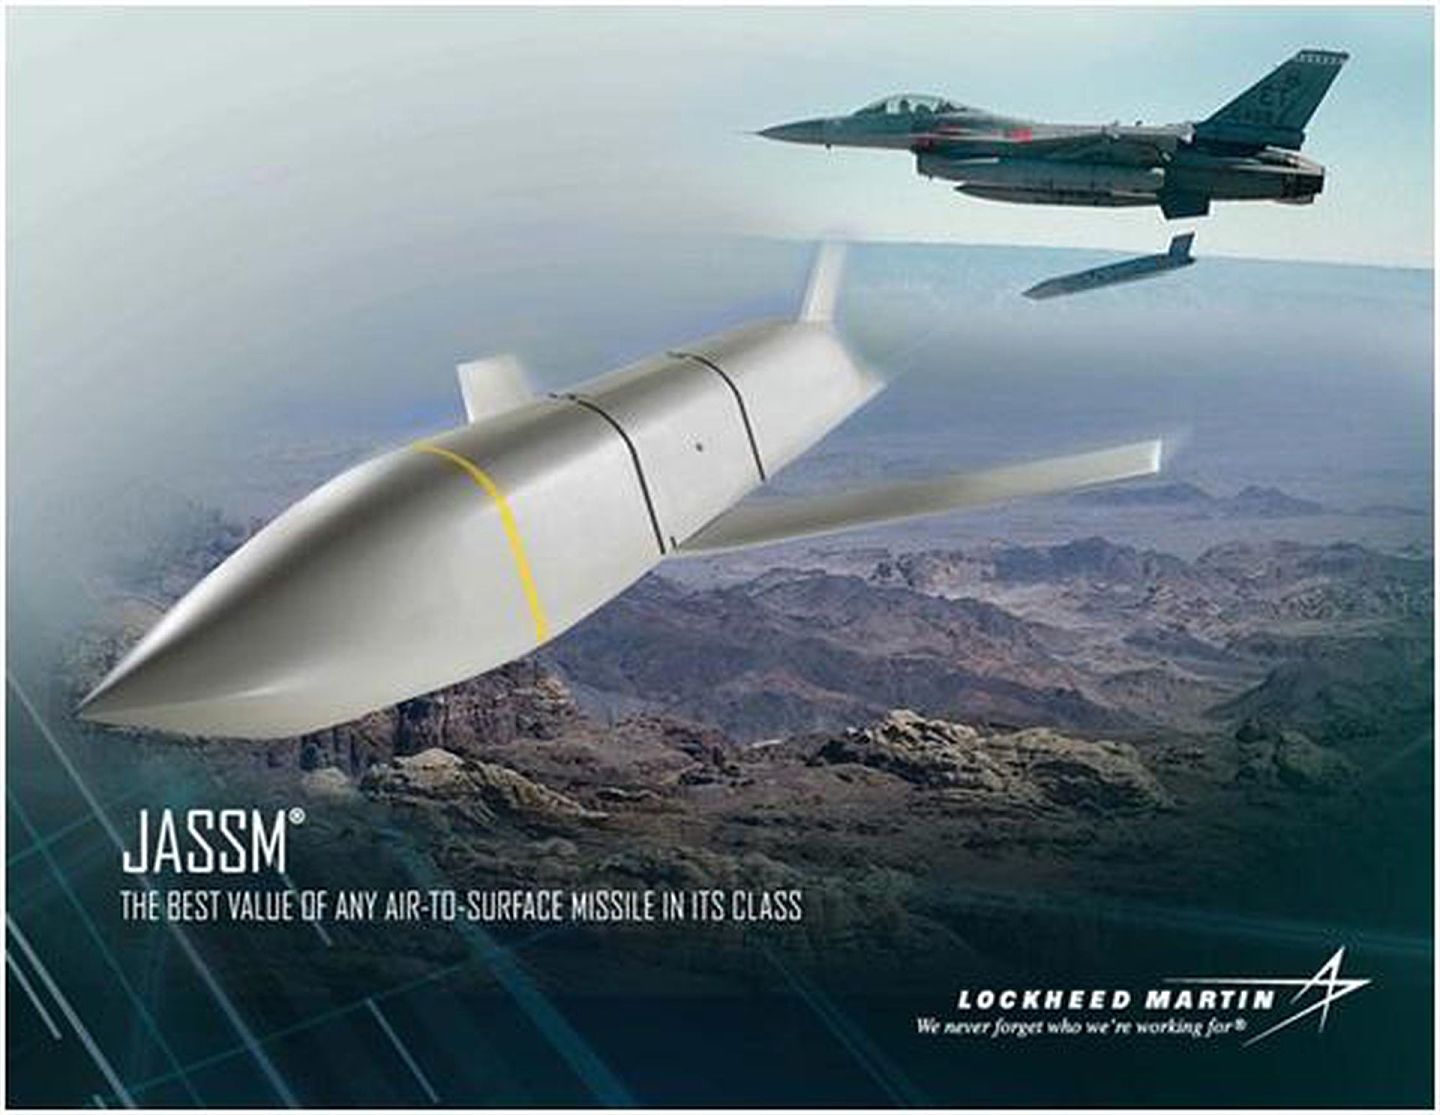 台军证实向美求售JASSM距外巡航导弹，以求具备拥有匿踪打击导弹的能力。由于此种武器相当敏感，且具有攻击性，未来发展相当难测。（Lockheed Martin）